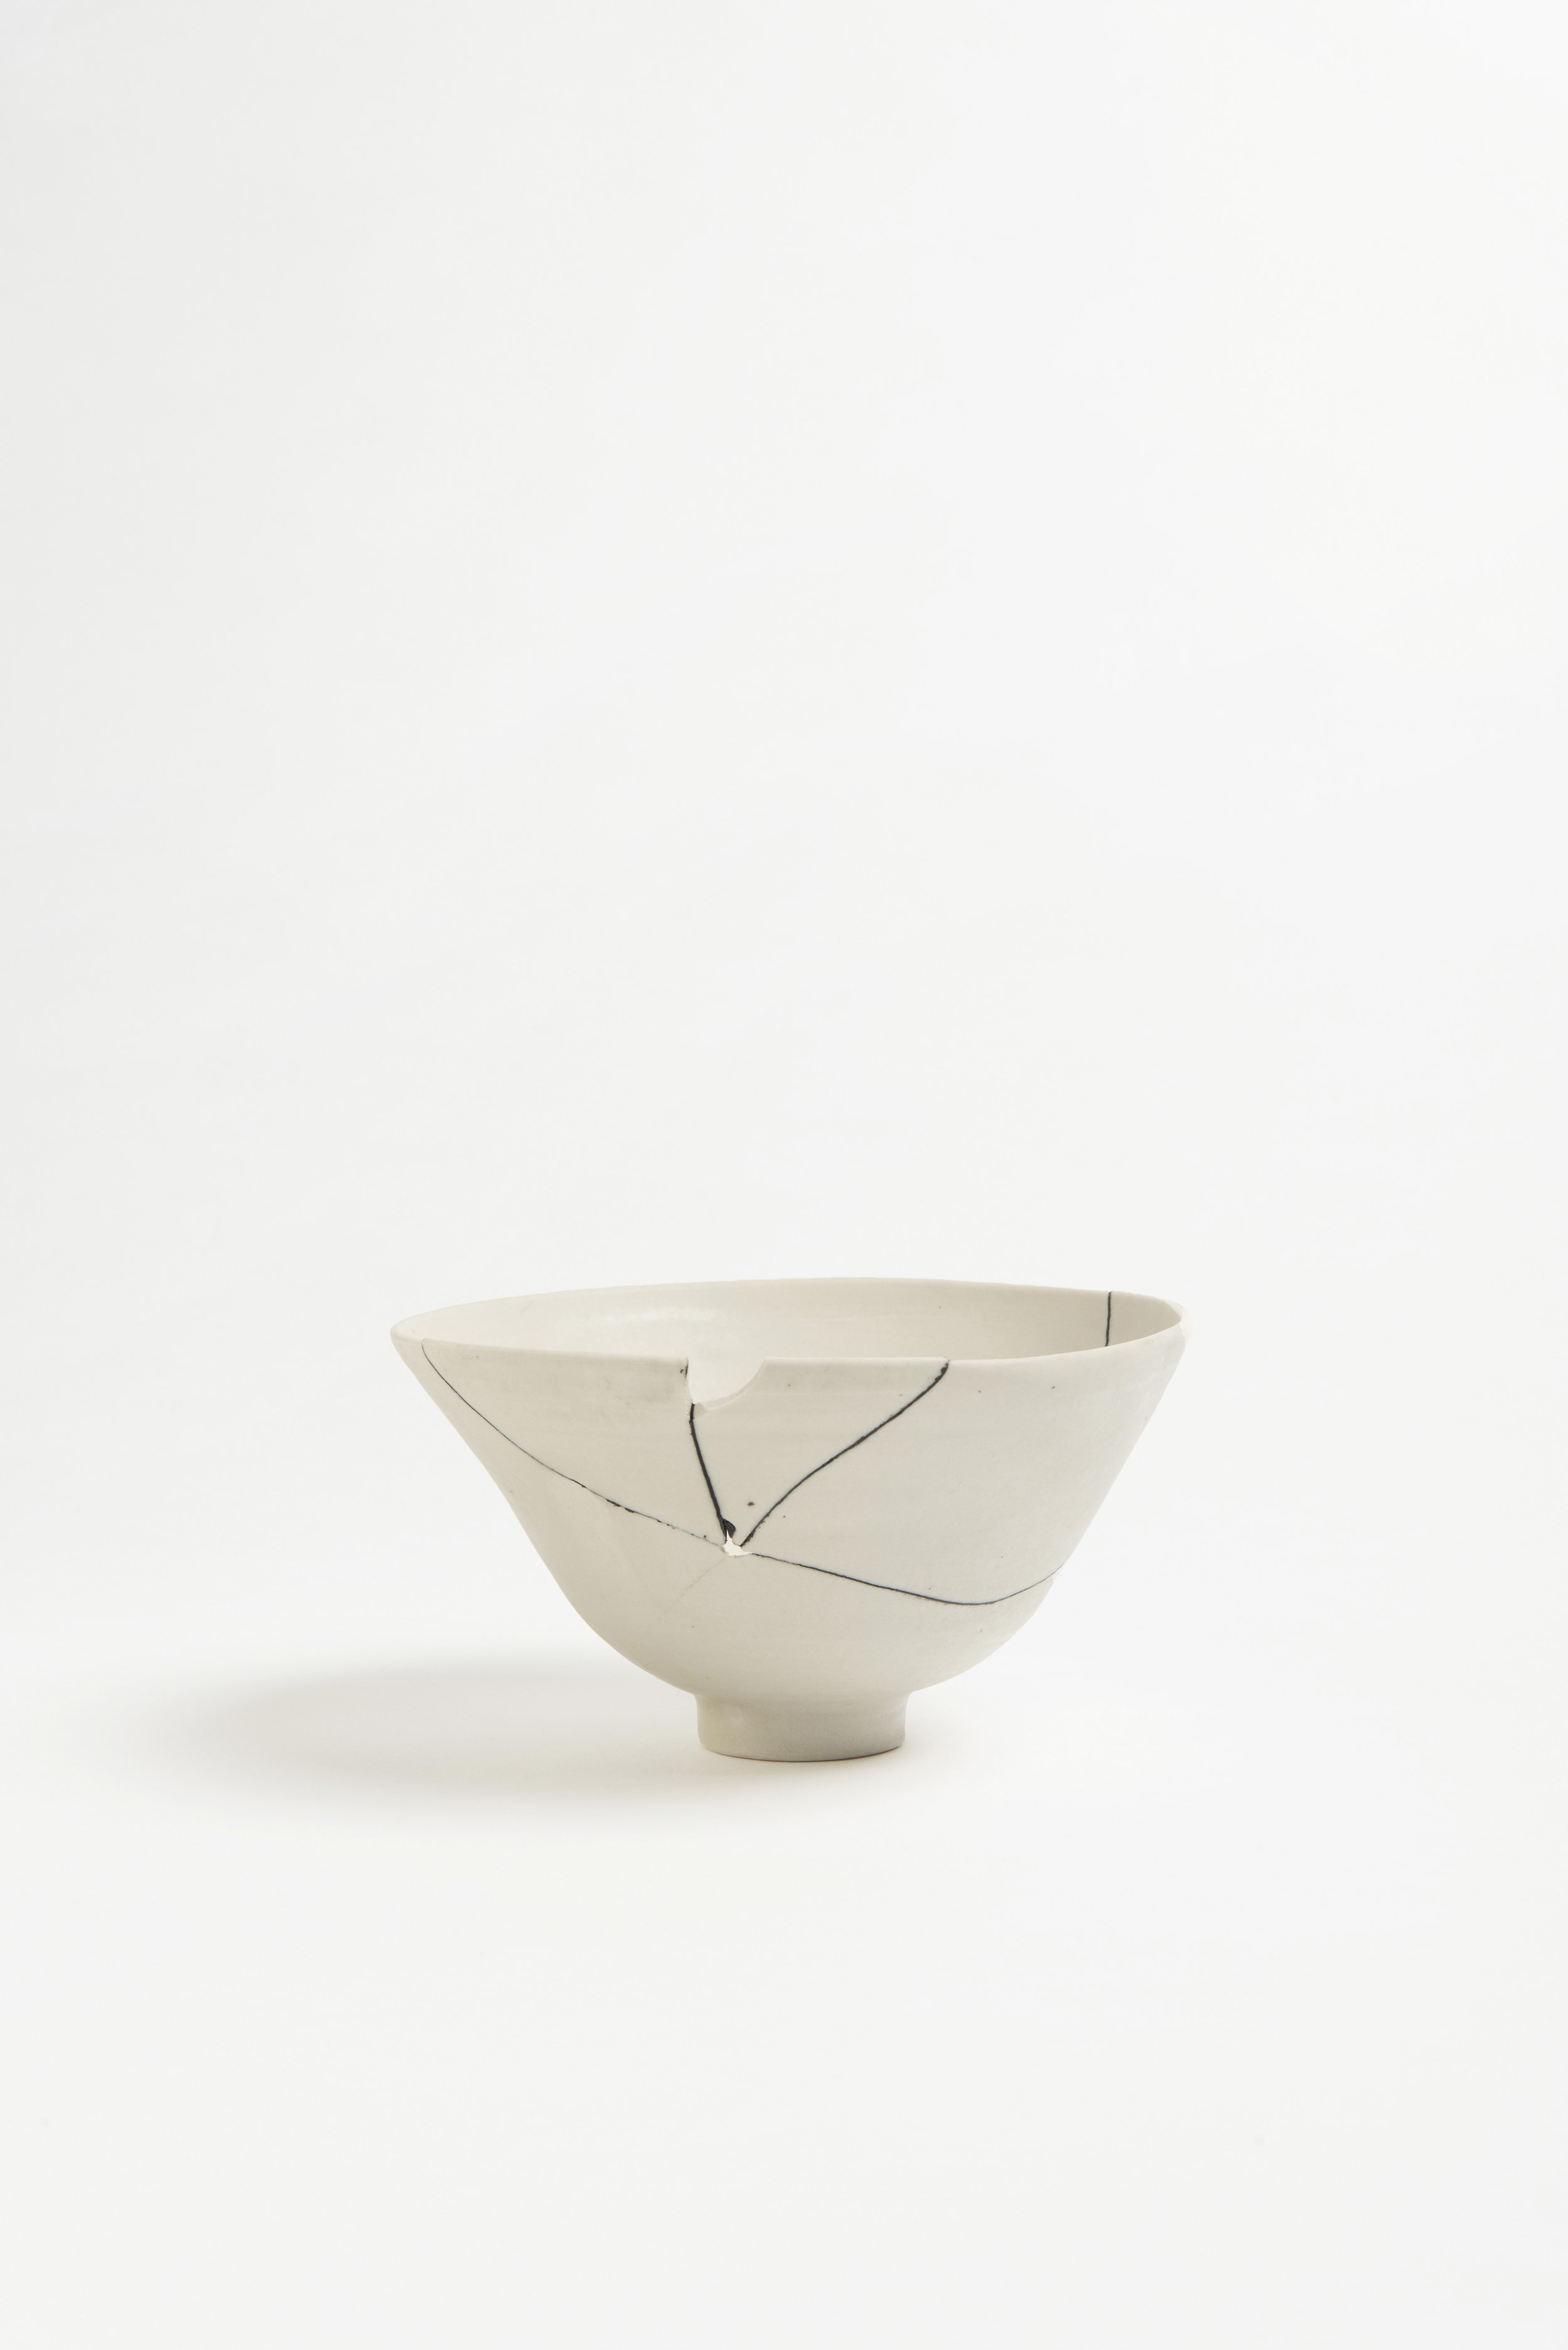 white-fracture-series-bowl-romy-northover-ceramics-the-garnered-02.jpg